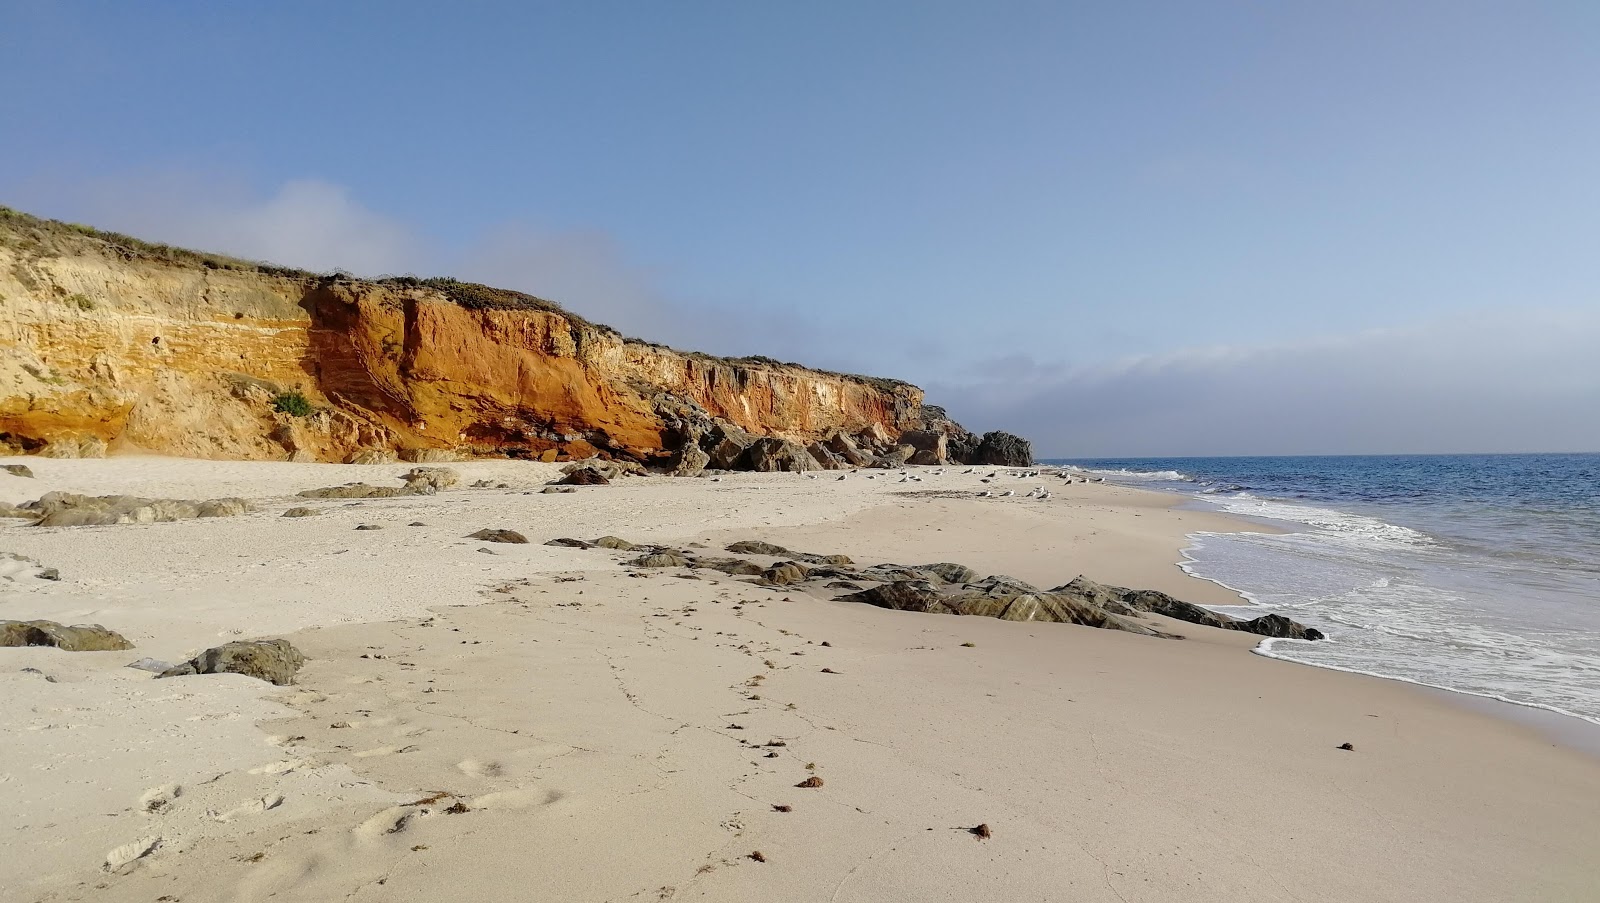 Fotografie cu Praia dos Canudos cu o suprafață de nisip fin strălucitor